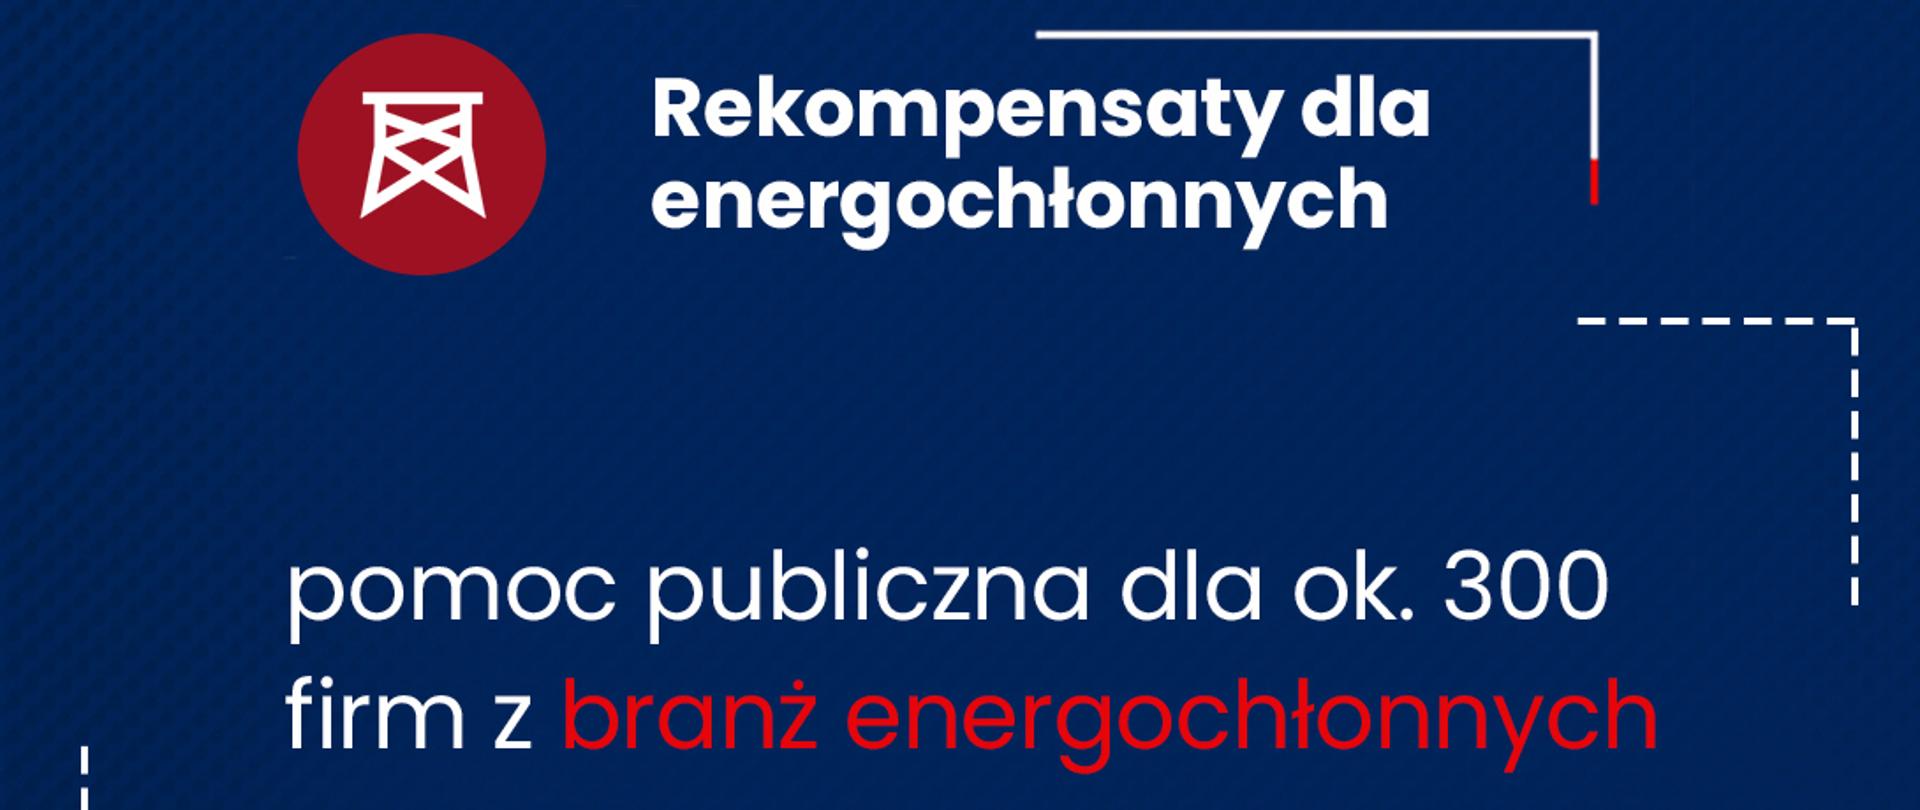 Na granatowym tle napis "Rekompensaty dla energochłonnych. Pomoc publiczna dla ok. 300 firm z branż energochłonnych".